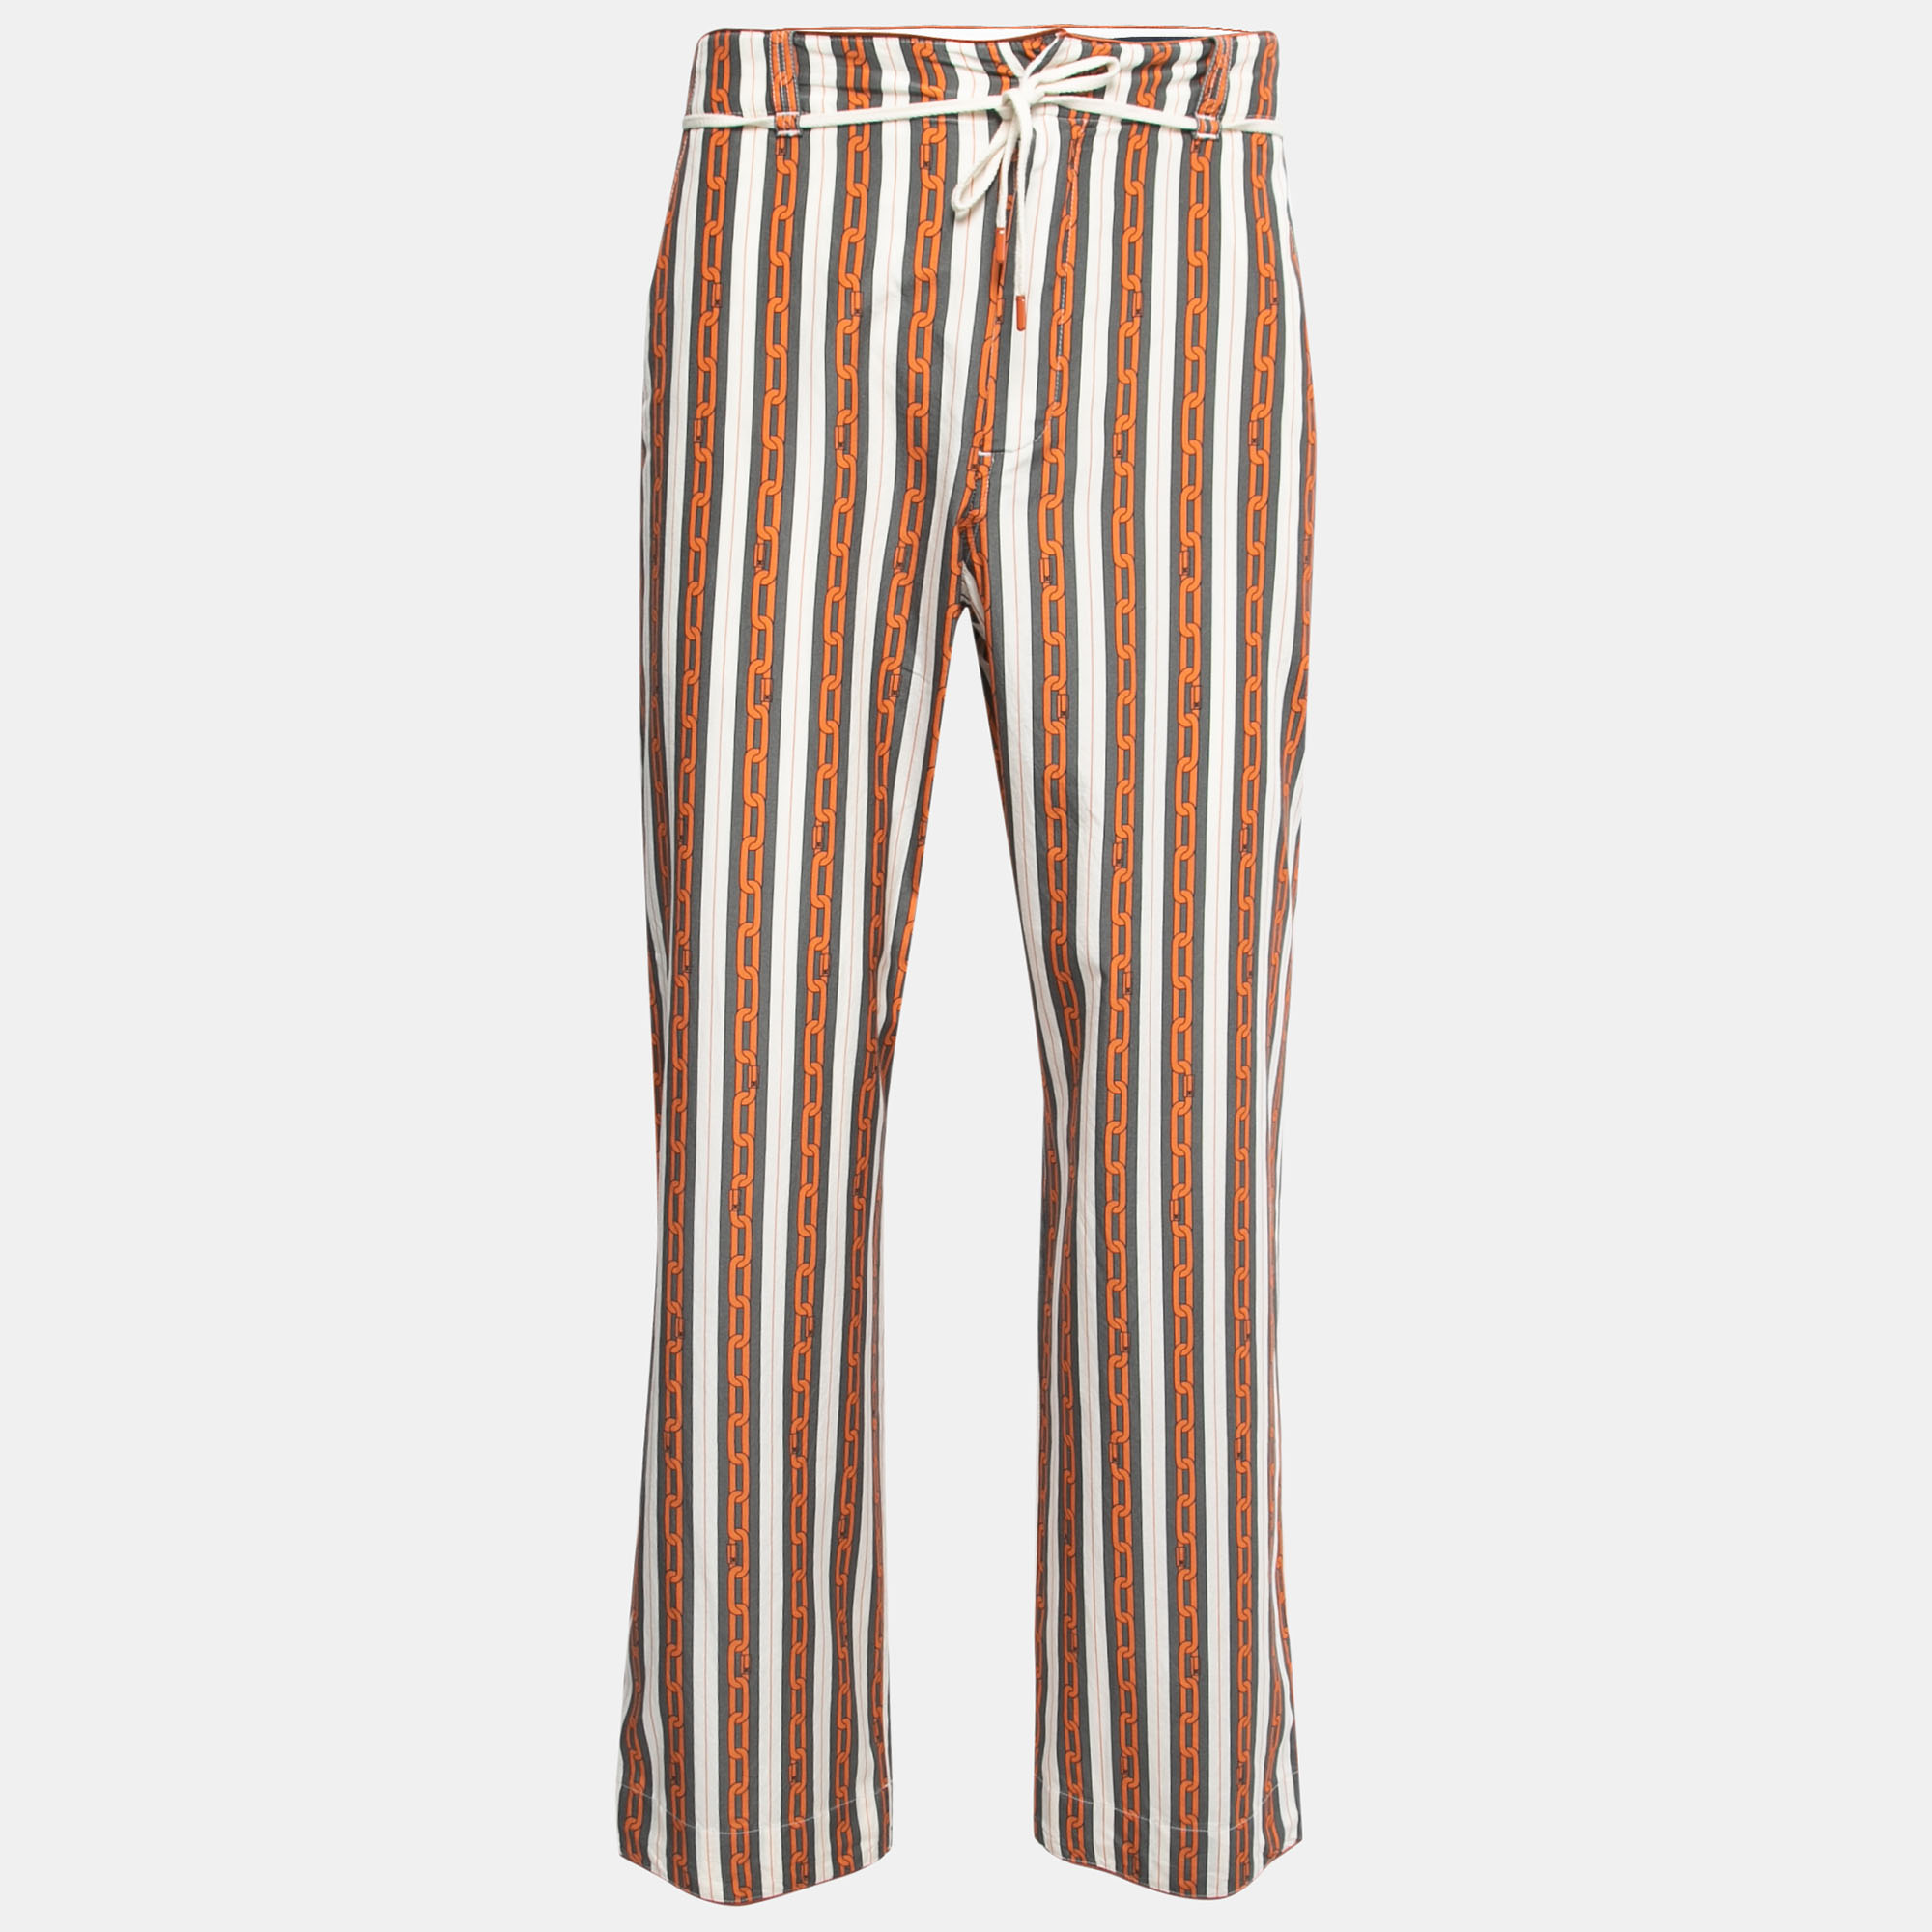 Authentic Louis Vuitton x Nigo Vintage Men's 20AW Pants